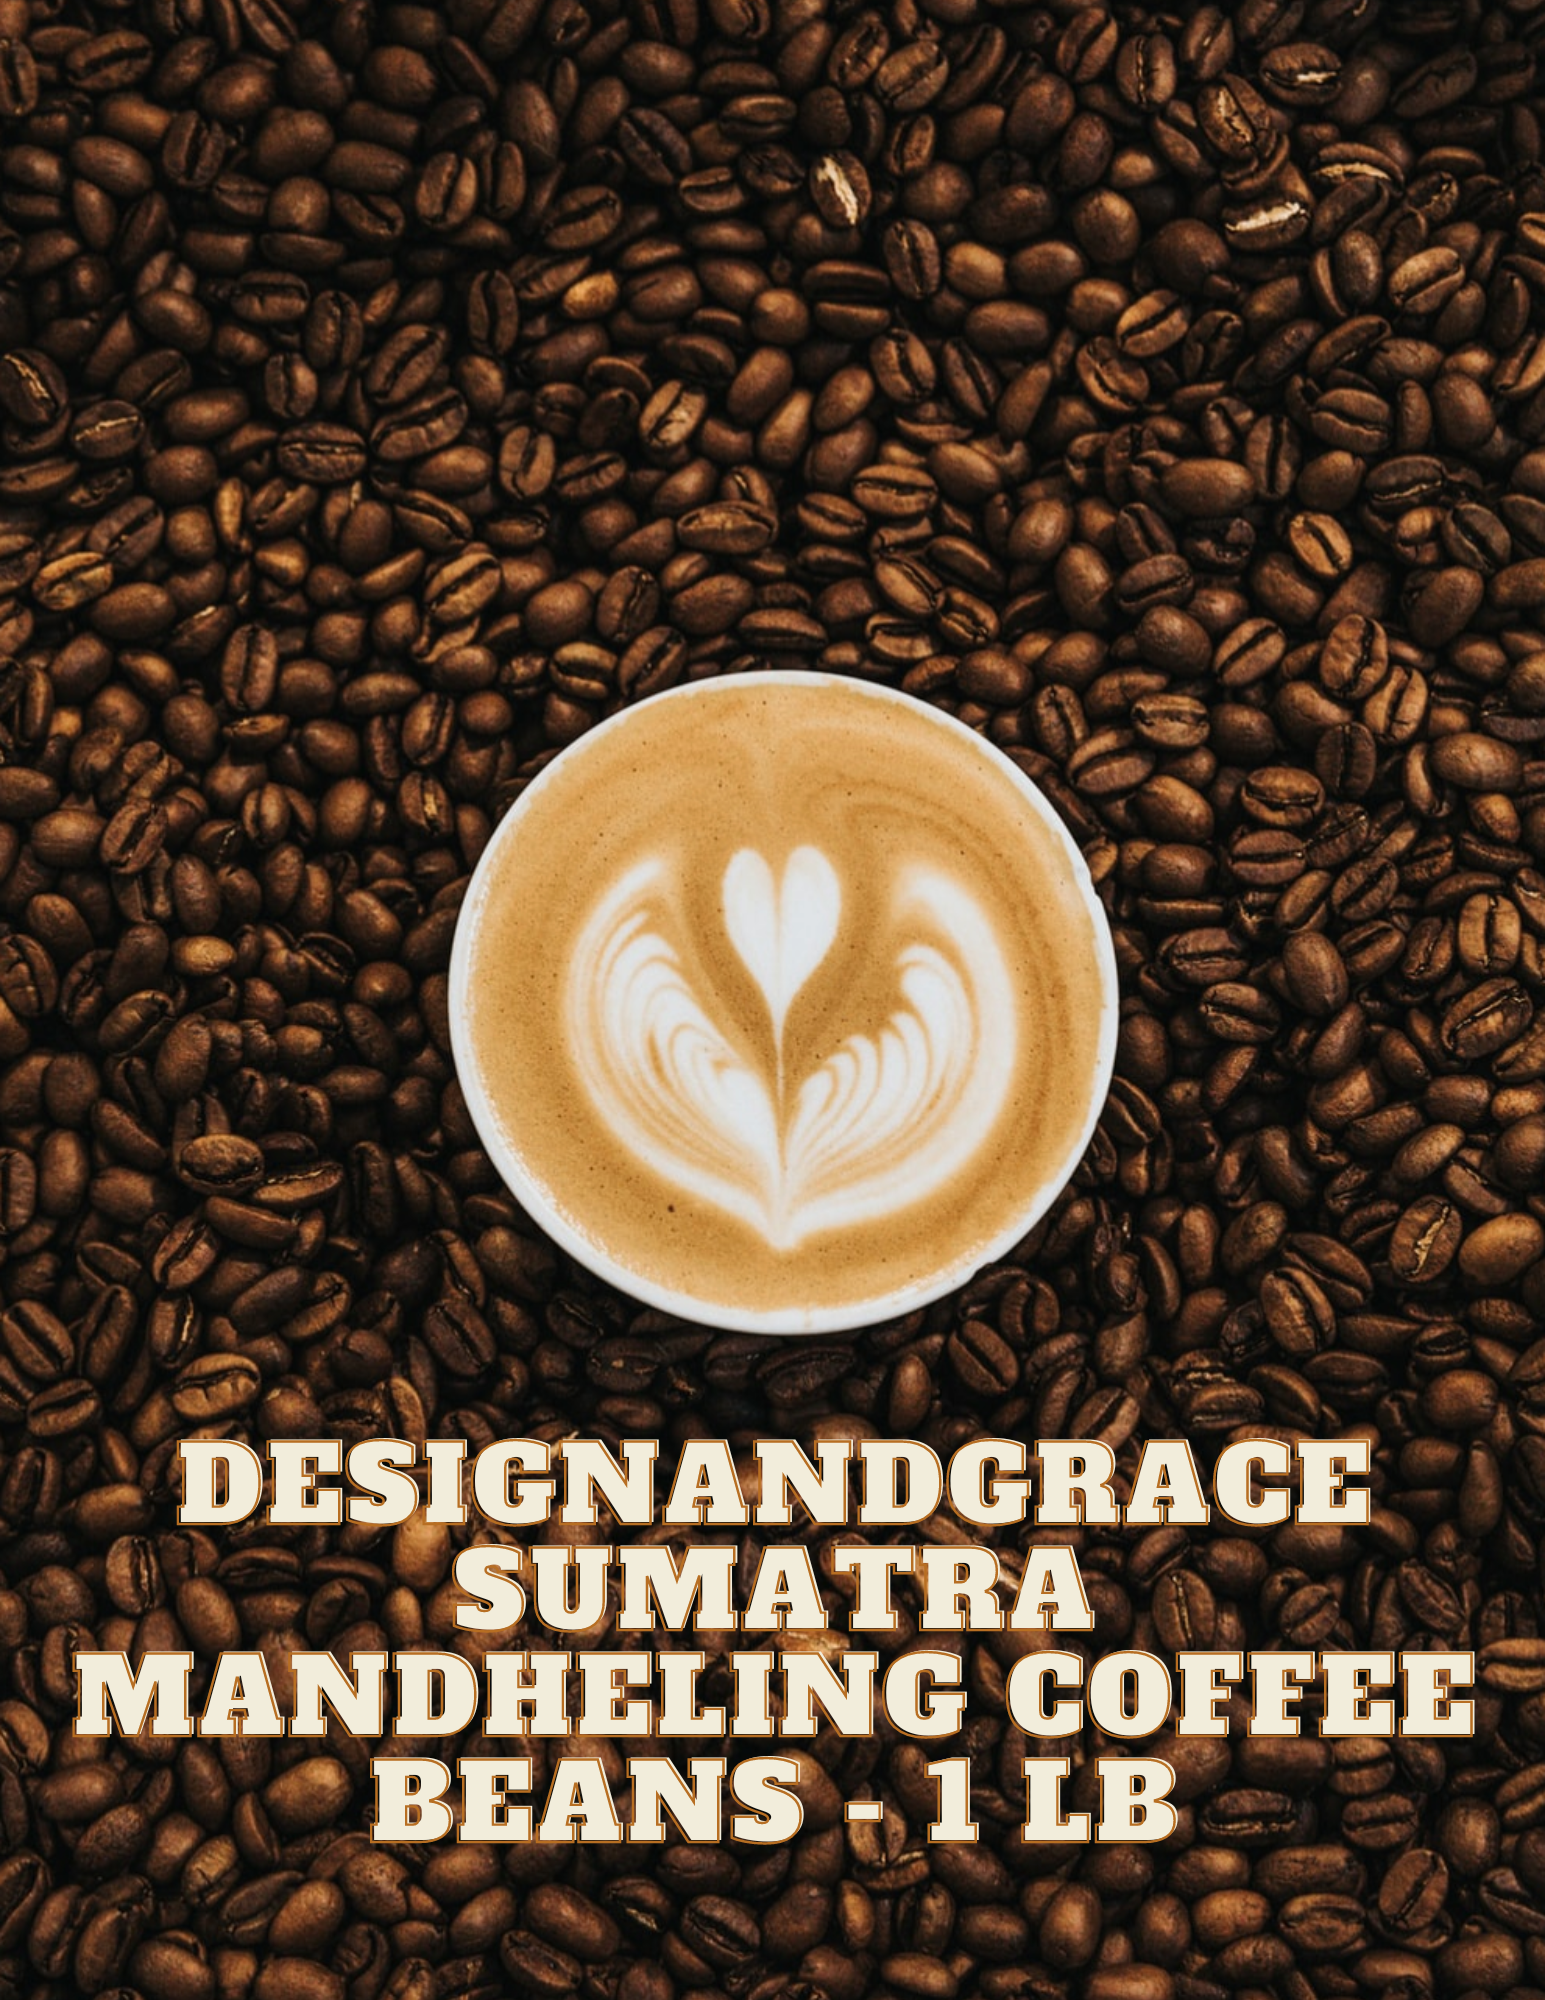 DesignandGrace Sumatra Mandheling Coffee Beans - 1 lb